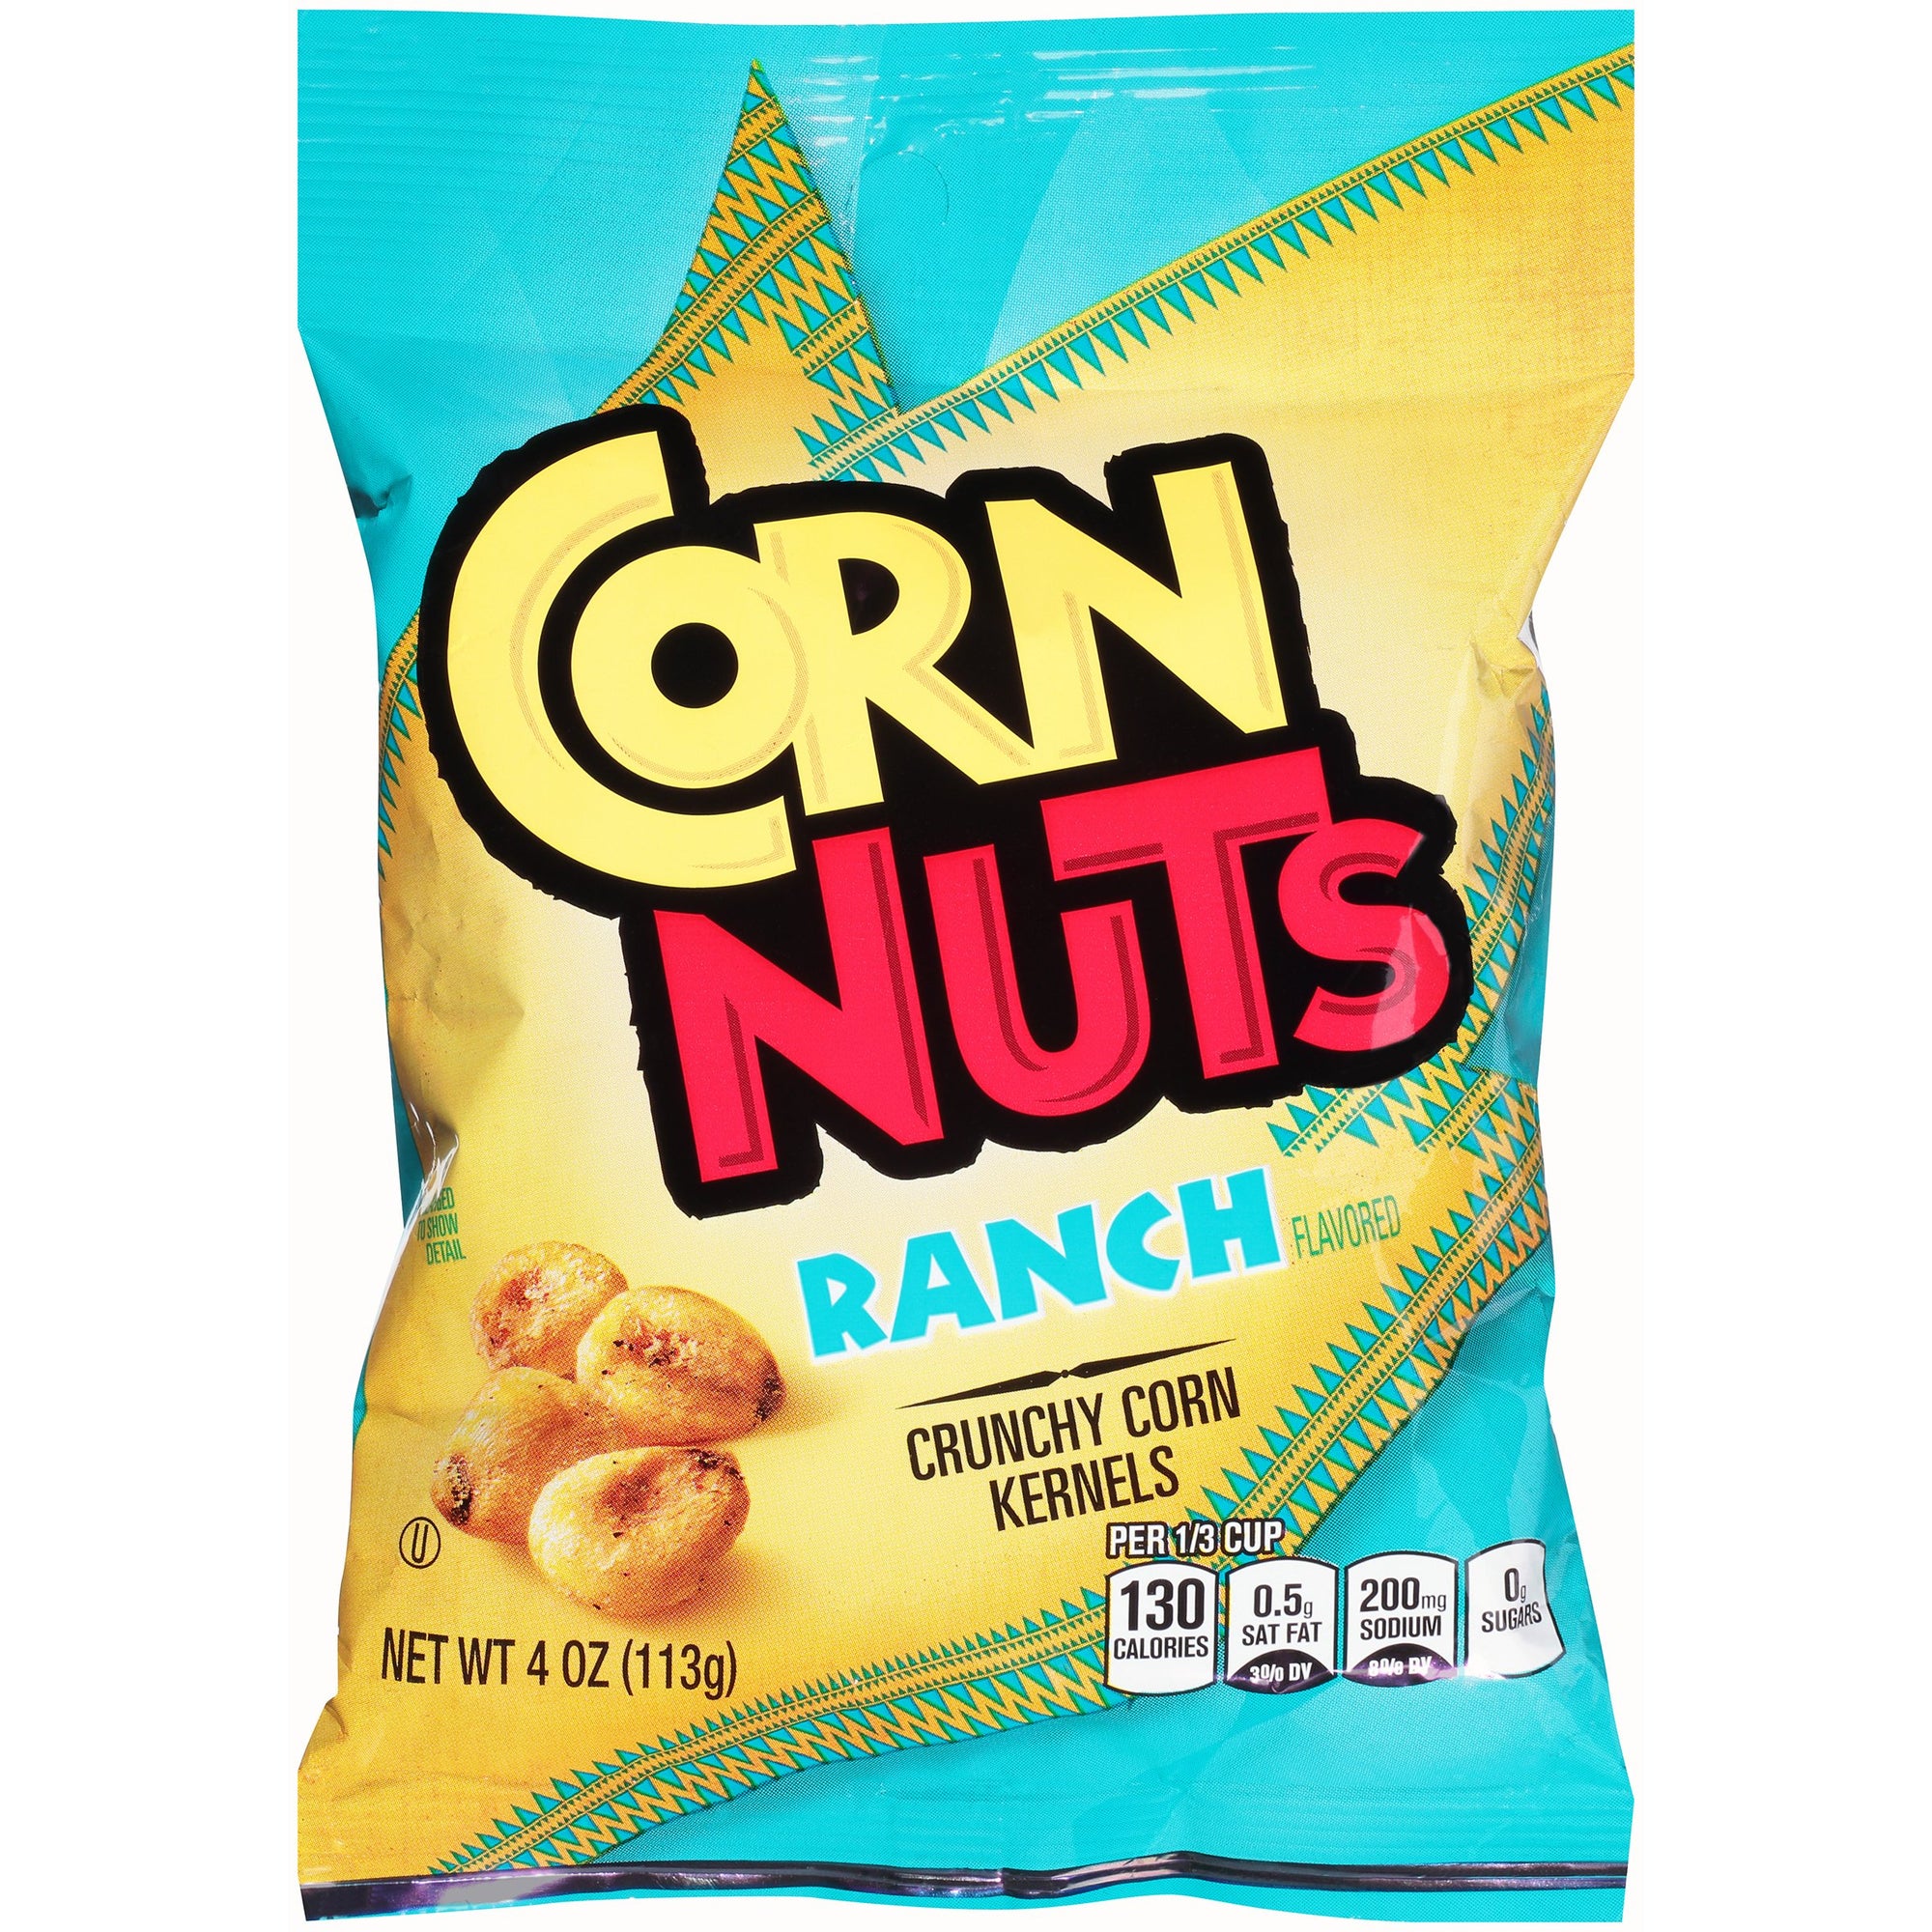 Corn Nuts Ranch 4oz